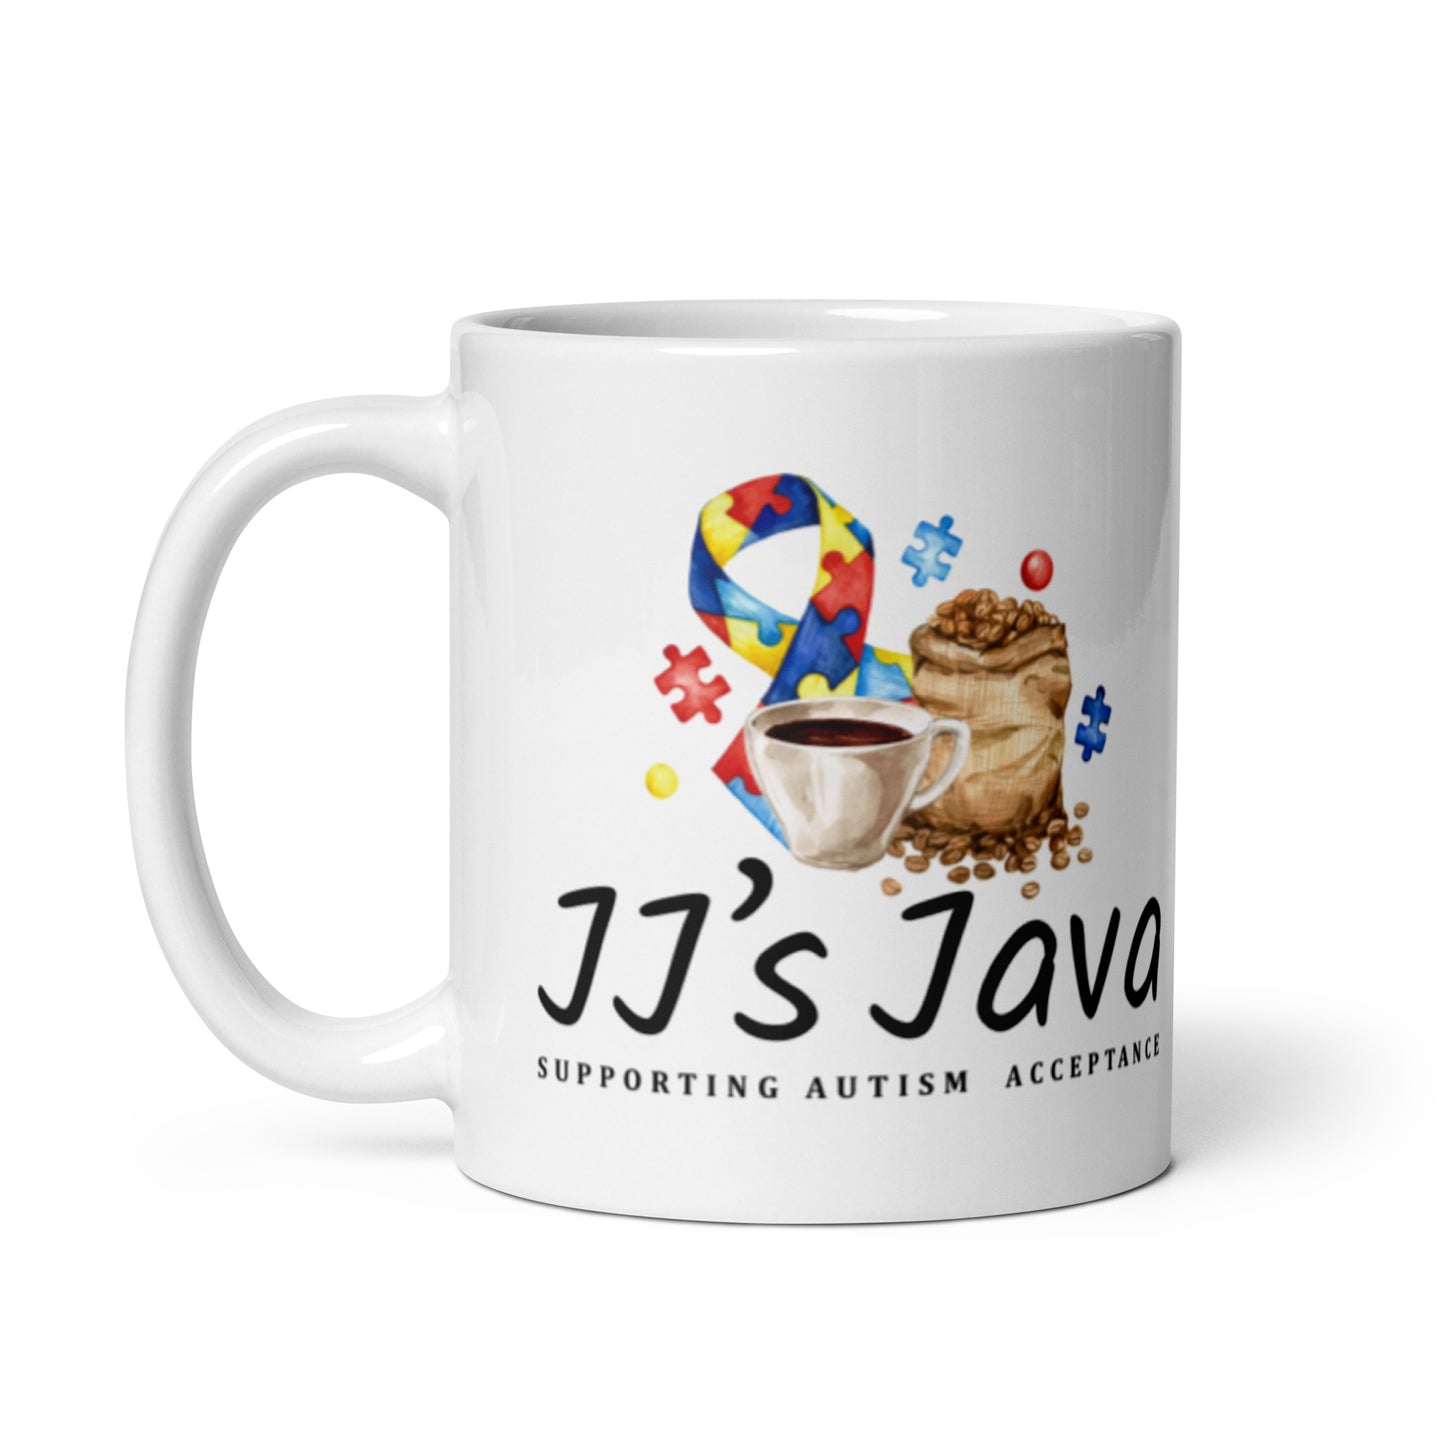 JJ's Java mug